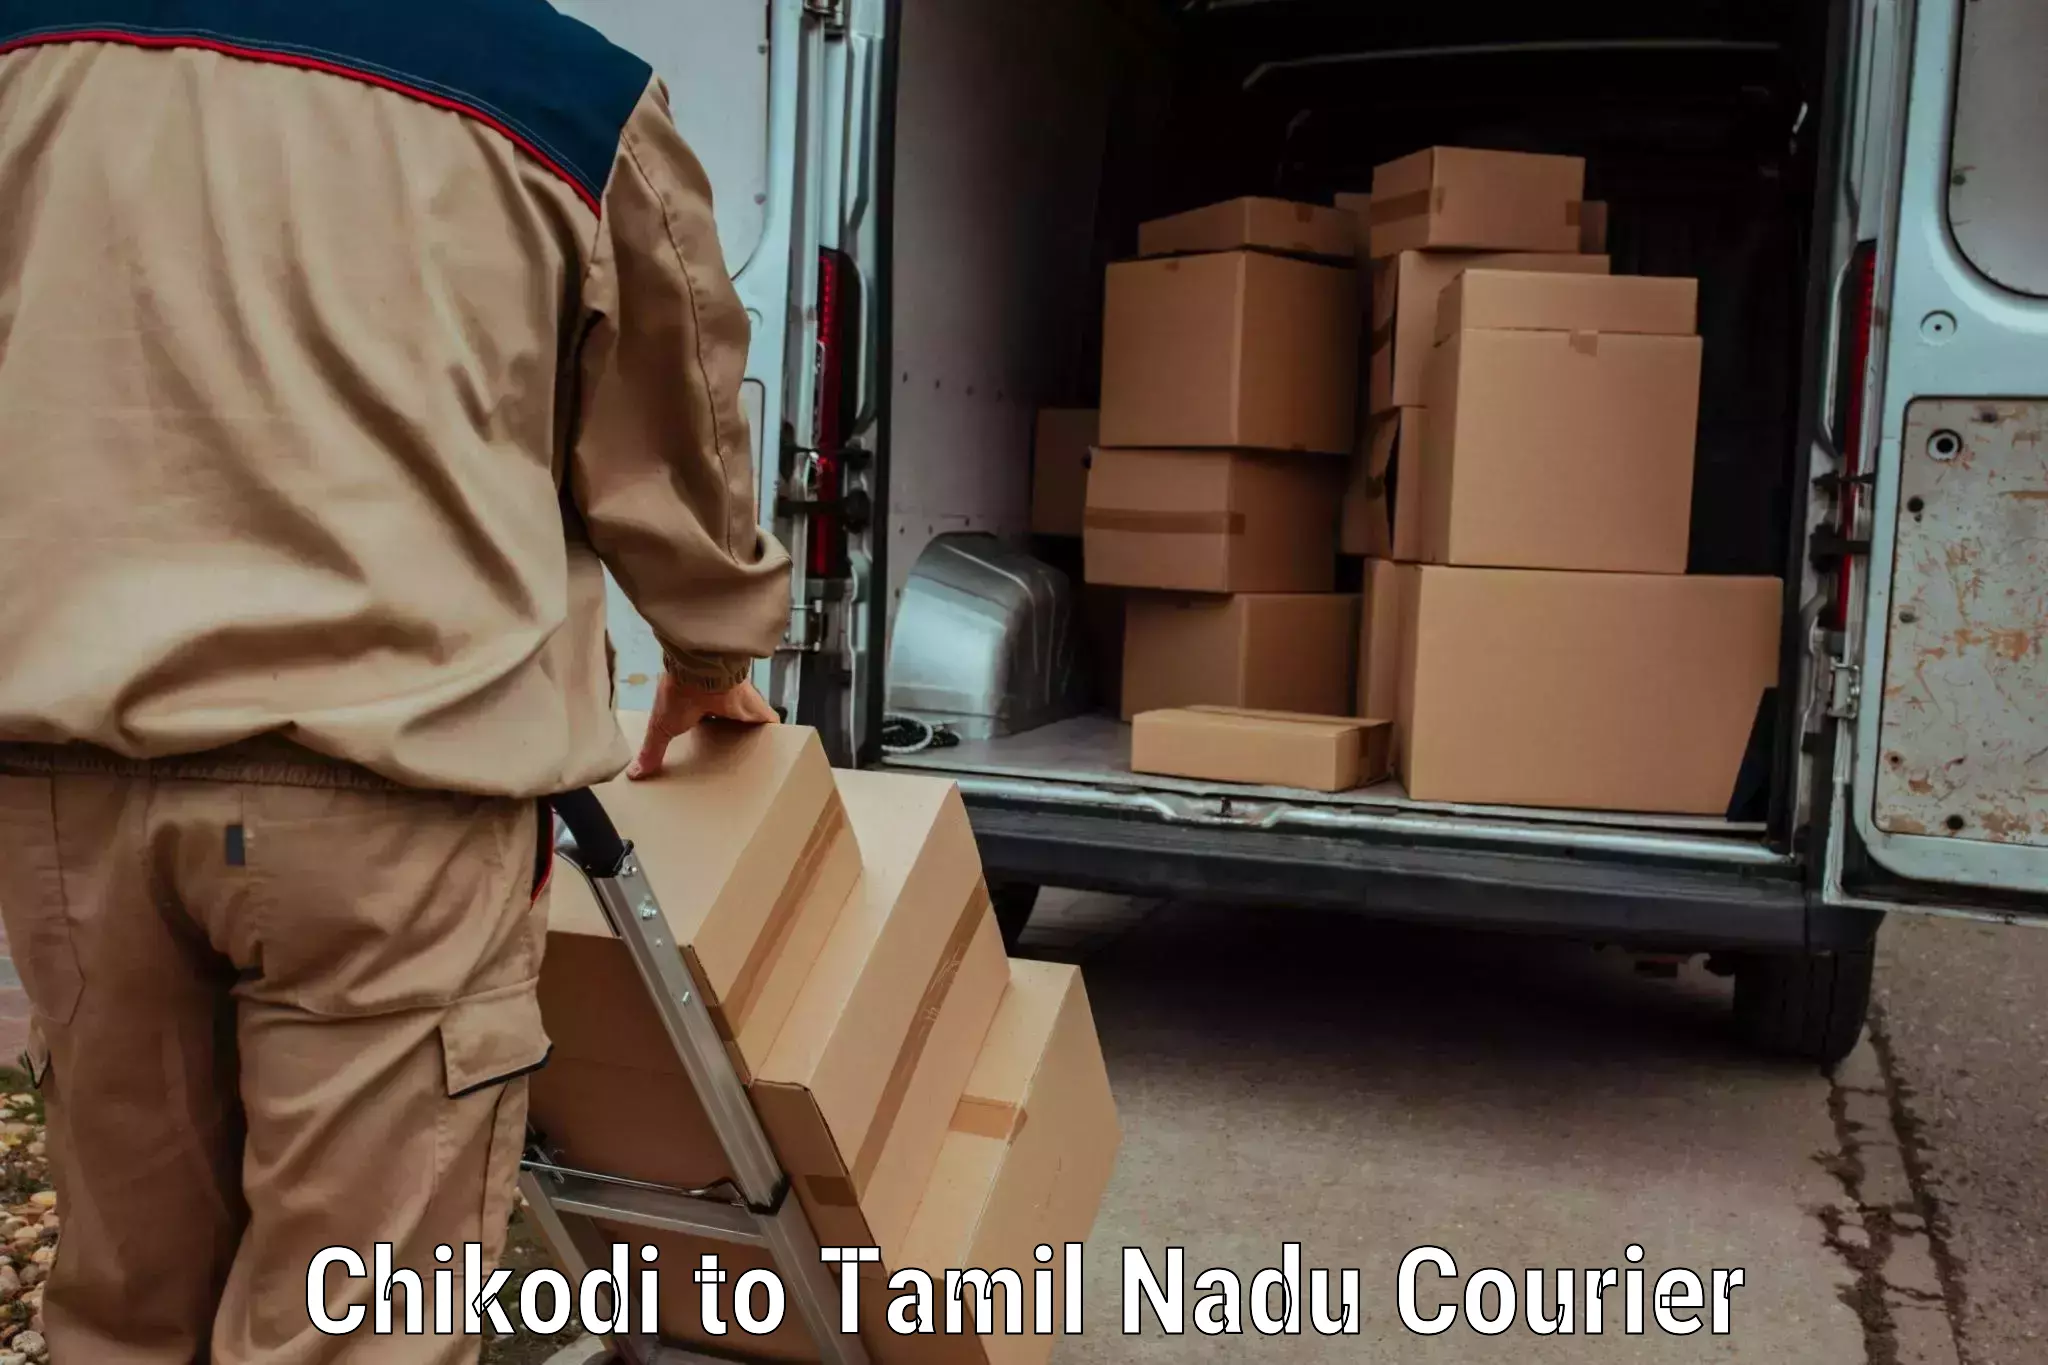 Cross-border shipping in Chikodi to Tindivanam